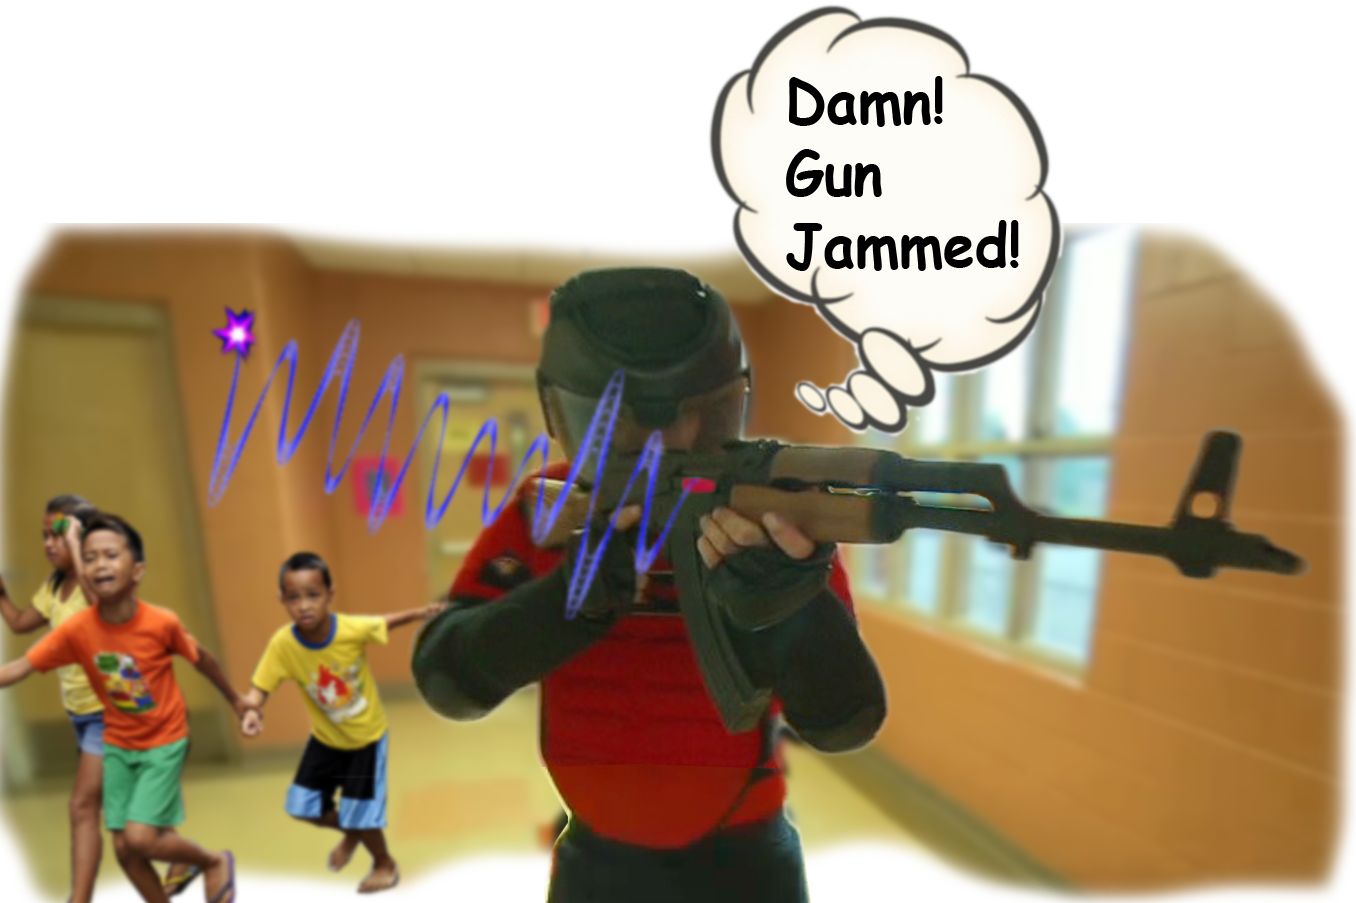 Gun Jam!